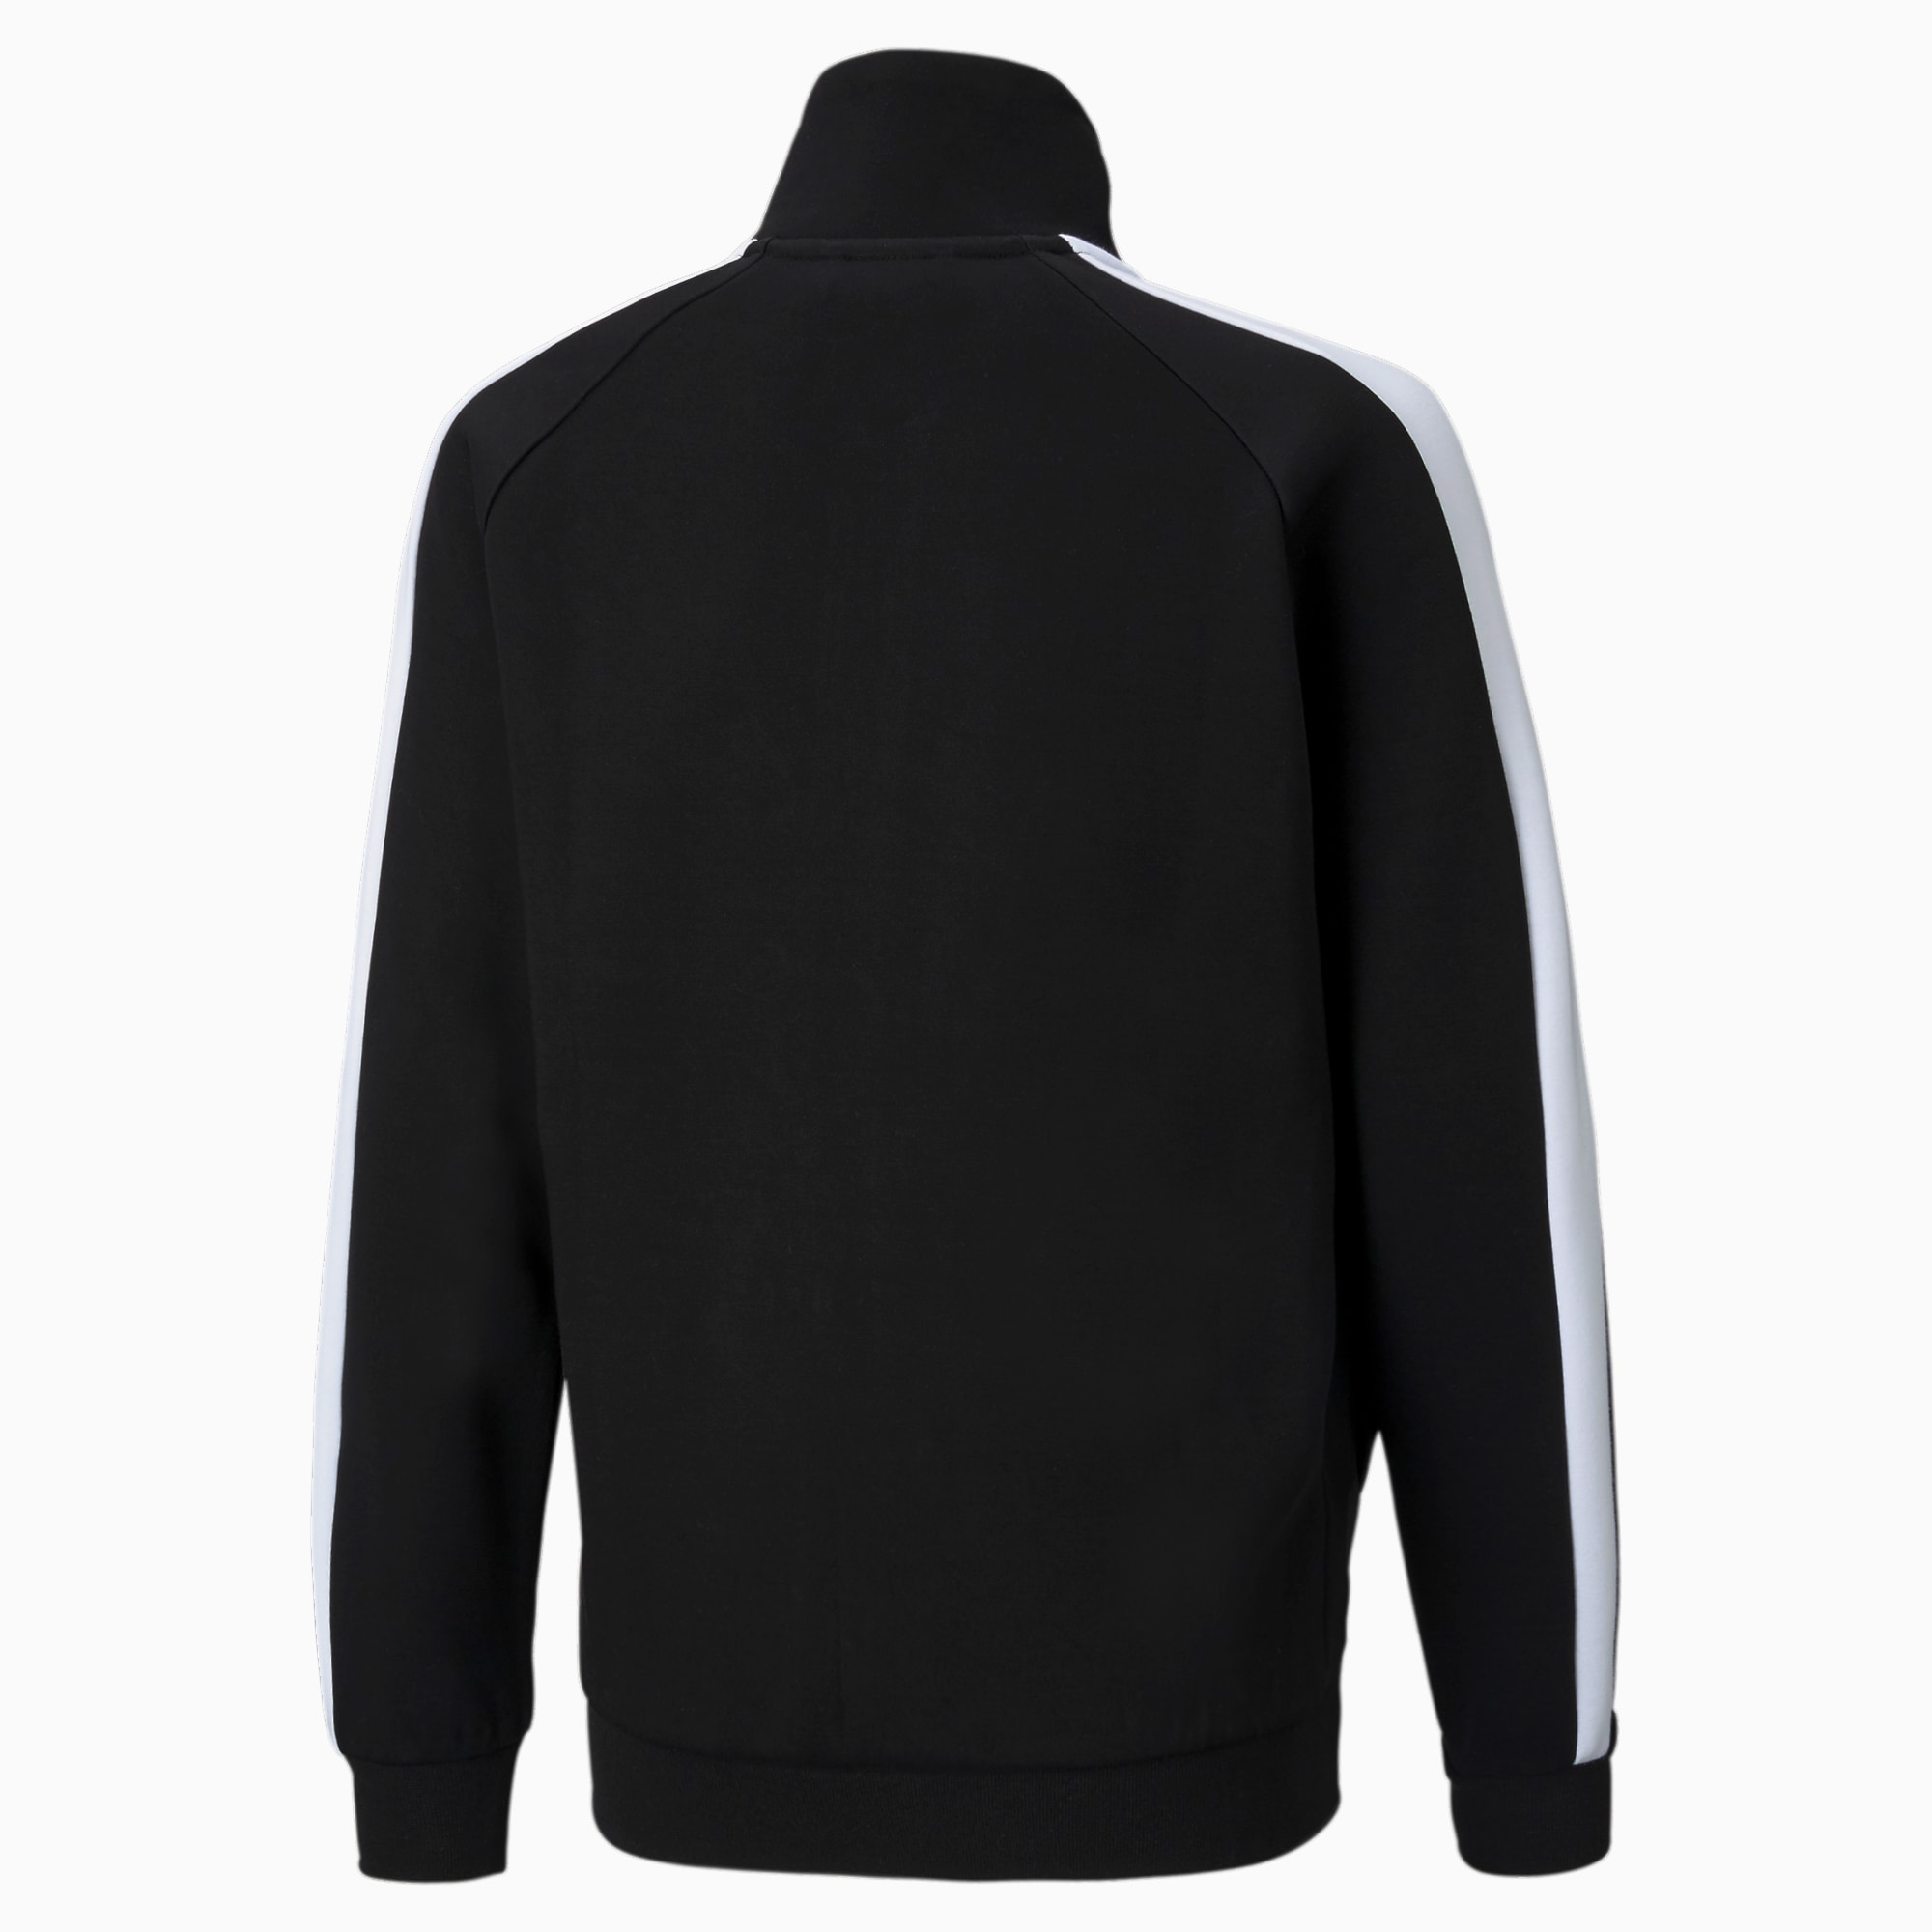 PUMA Iconic T7 Youth Track Jacket, Black/White, Size 140, Clothing